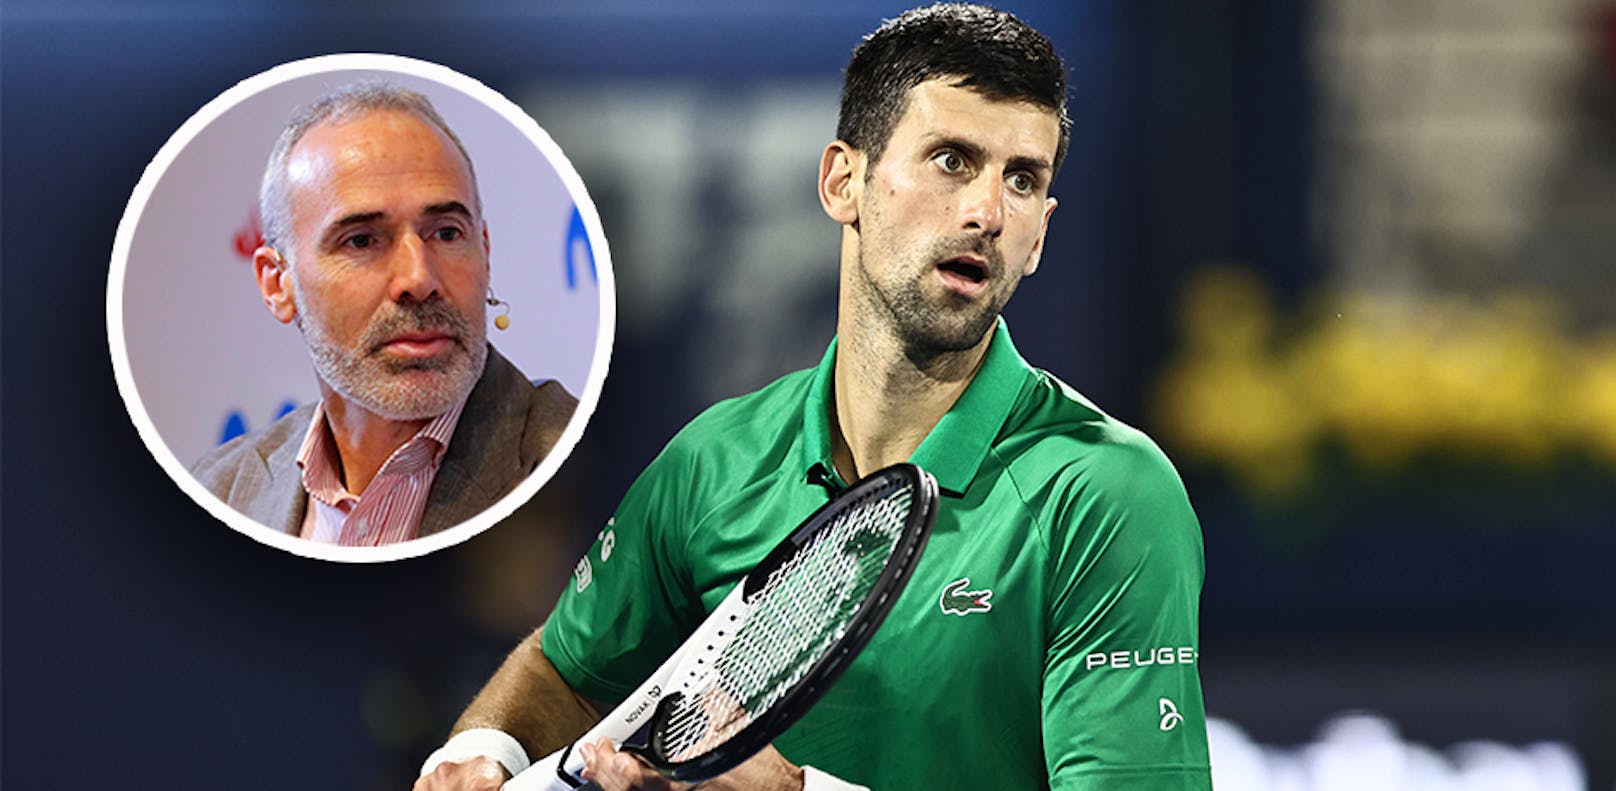 Alex Corretja drückt seine Bewunderung für die Konsequenz von Novak Djokovic aus. 